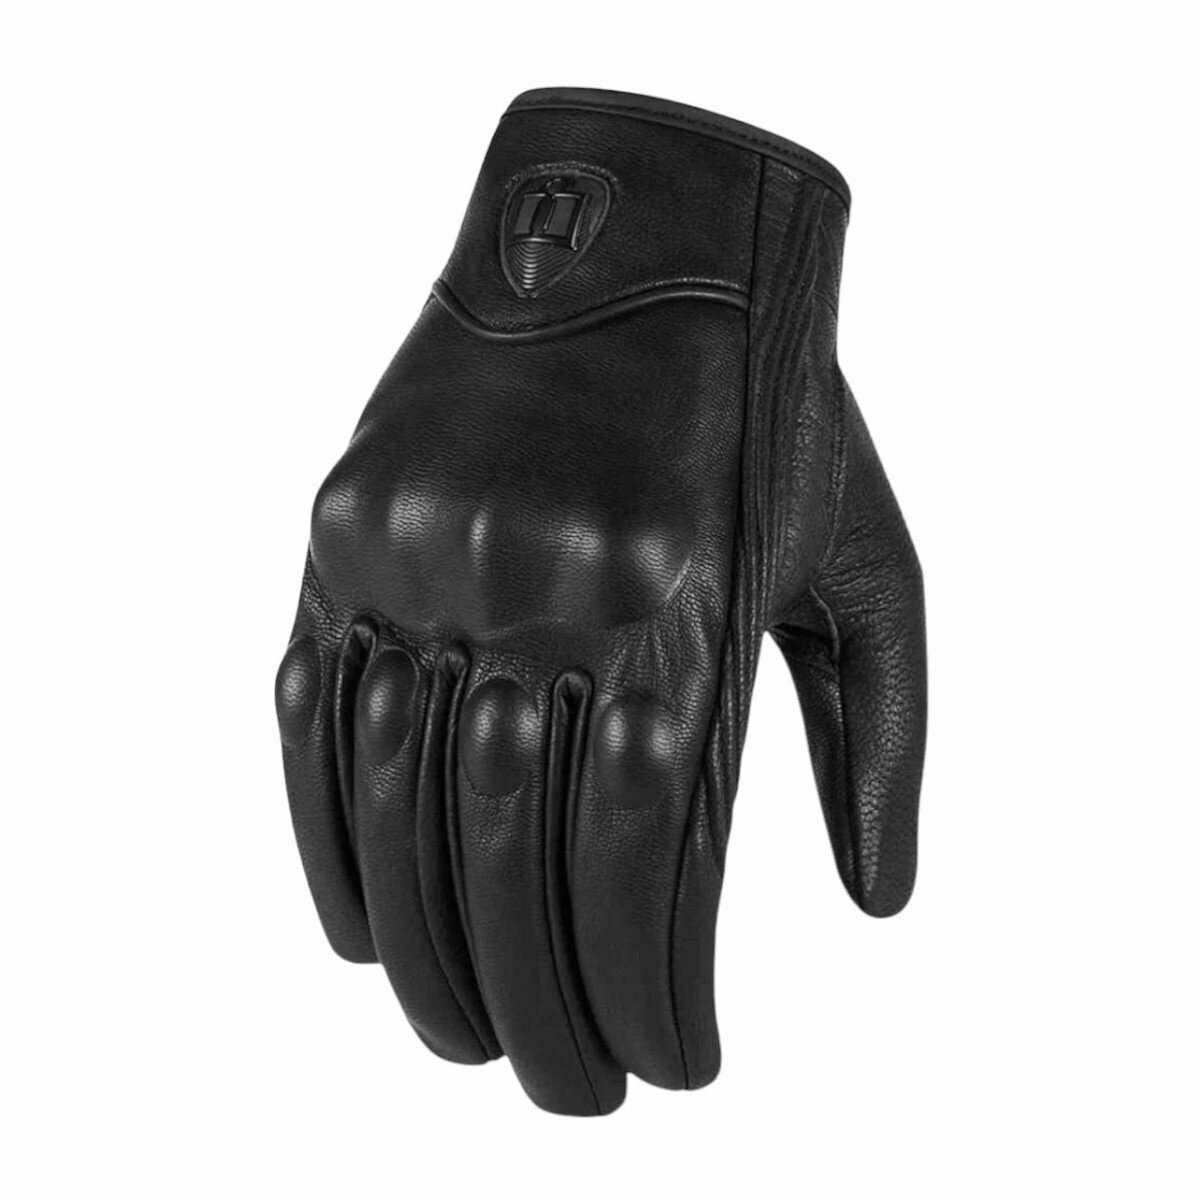 Мотоперчатки перчатки кожаные Y-12 для мотоциклиста на мотоцикл скутер мопед квадроцикл черные L